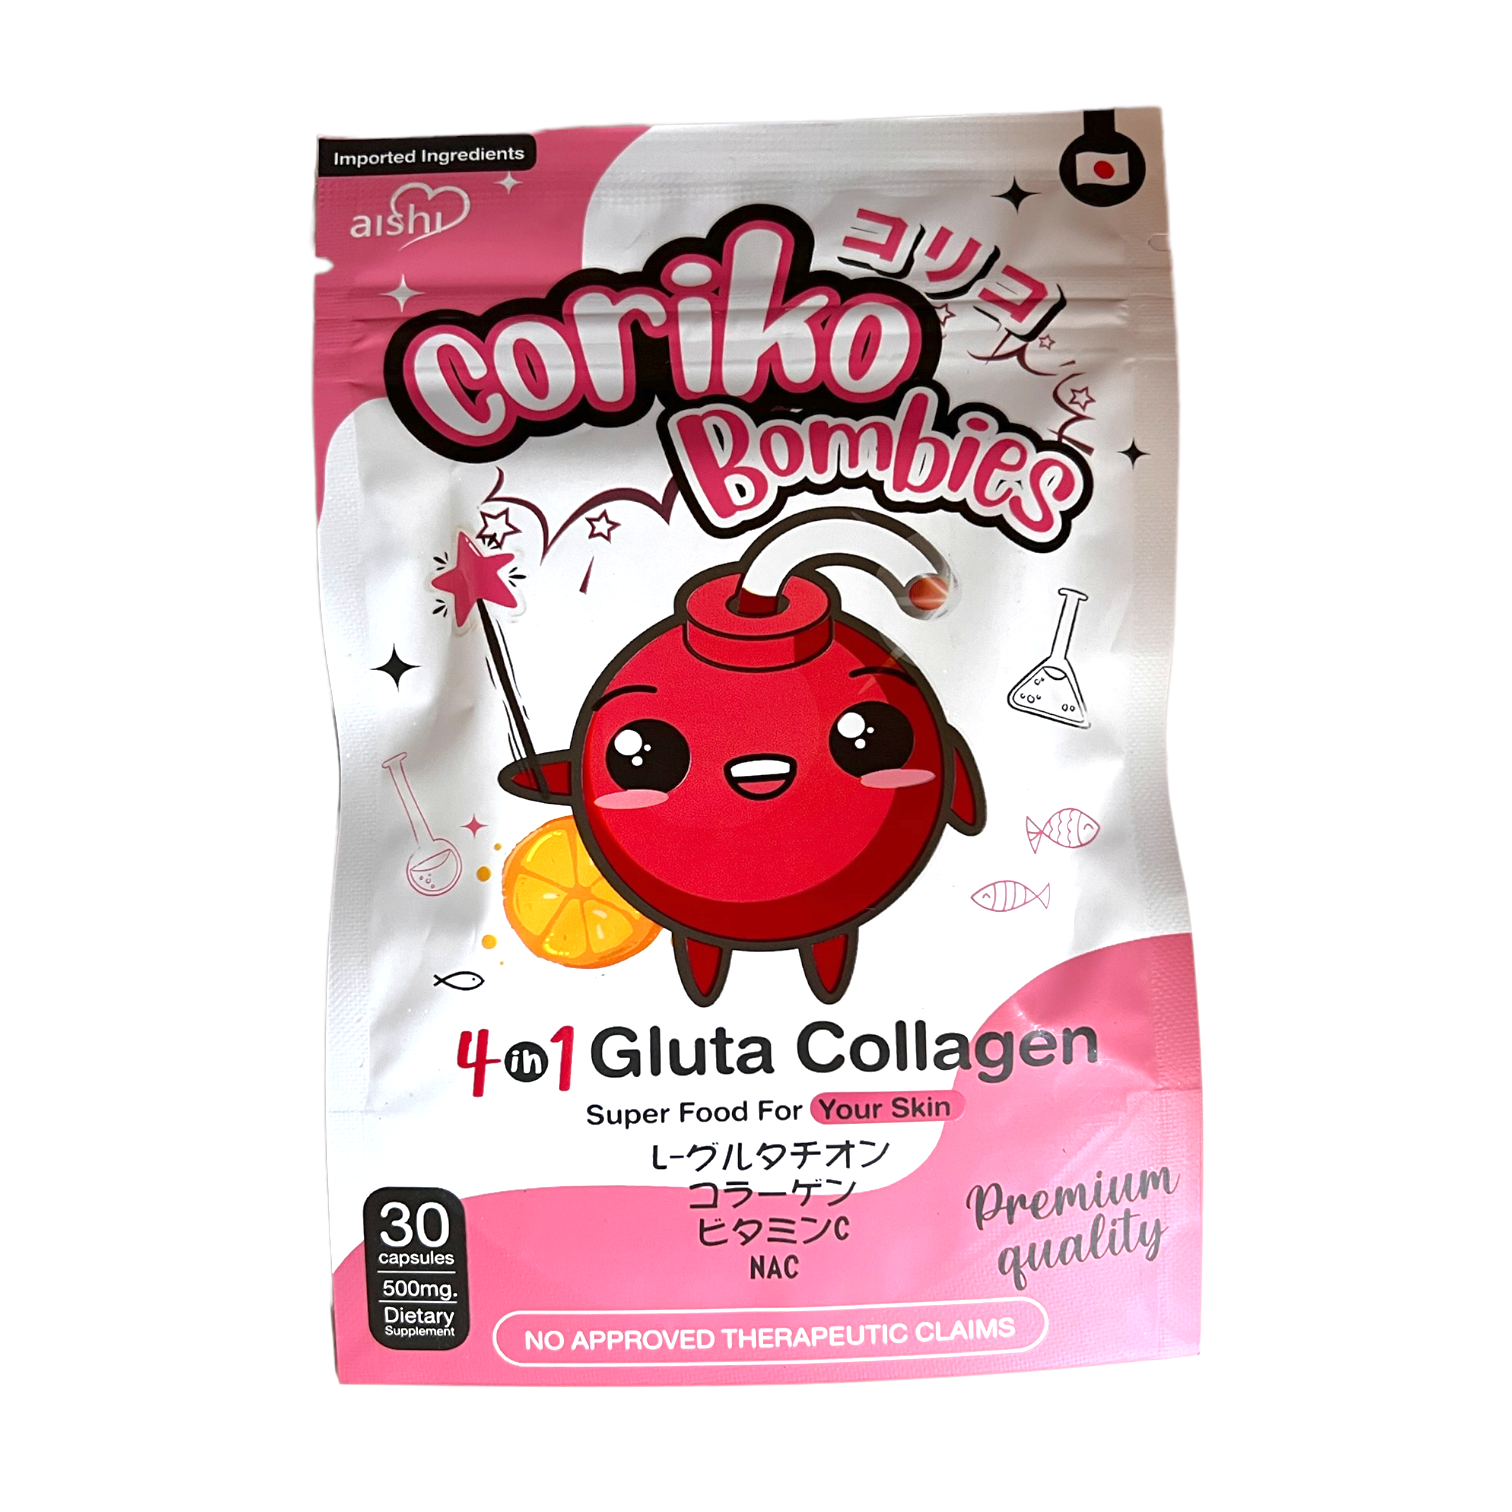 Aishi - Coriko Bombies 4 in 1 Gluta Collagen 30 capsules